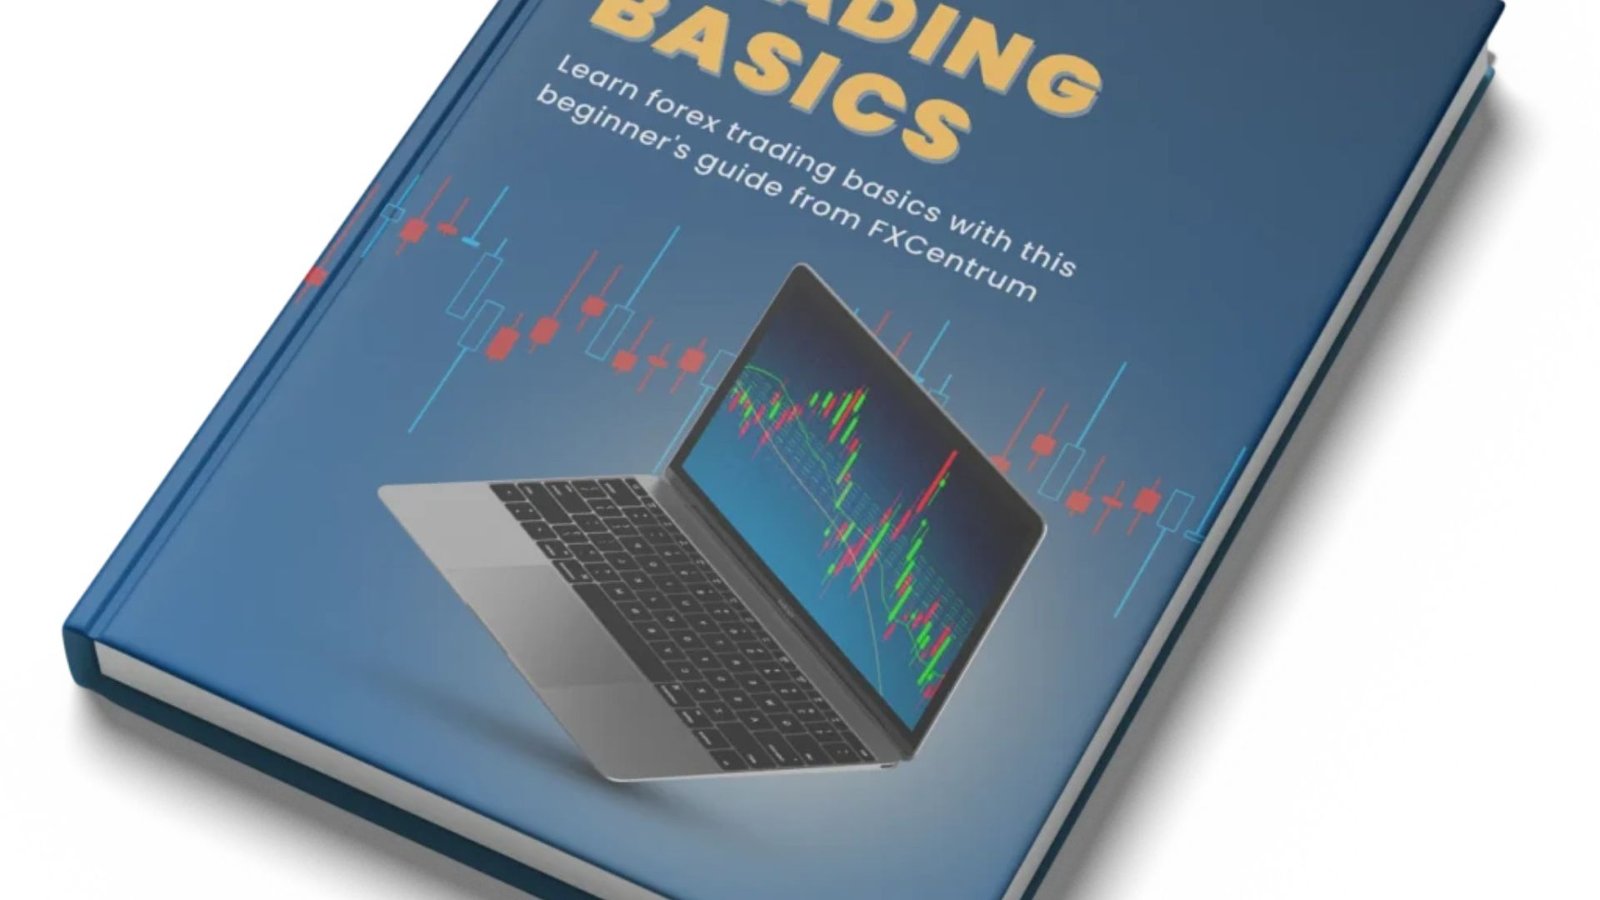 a blue book written trading basics 